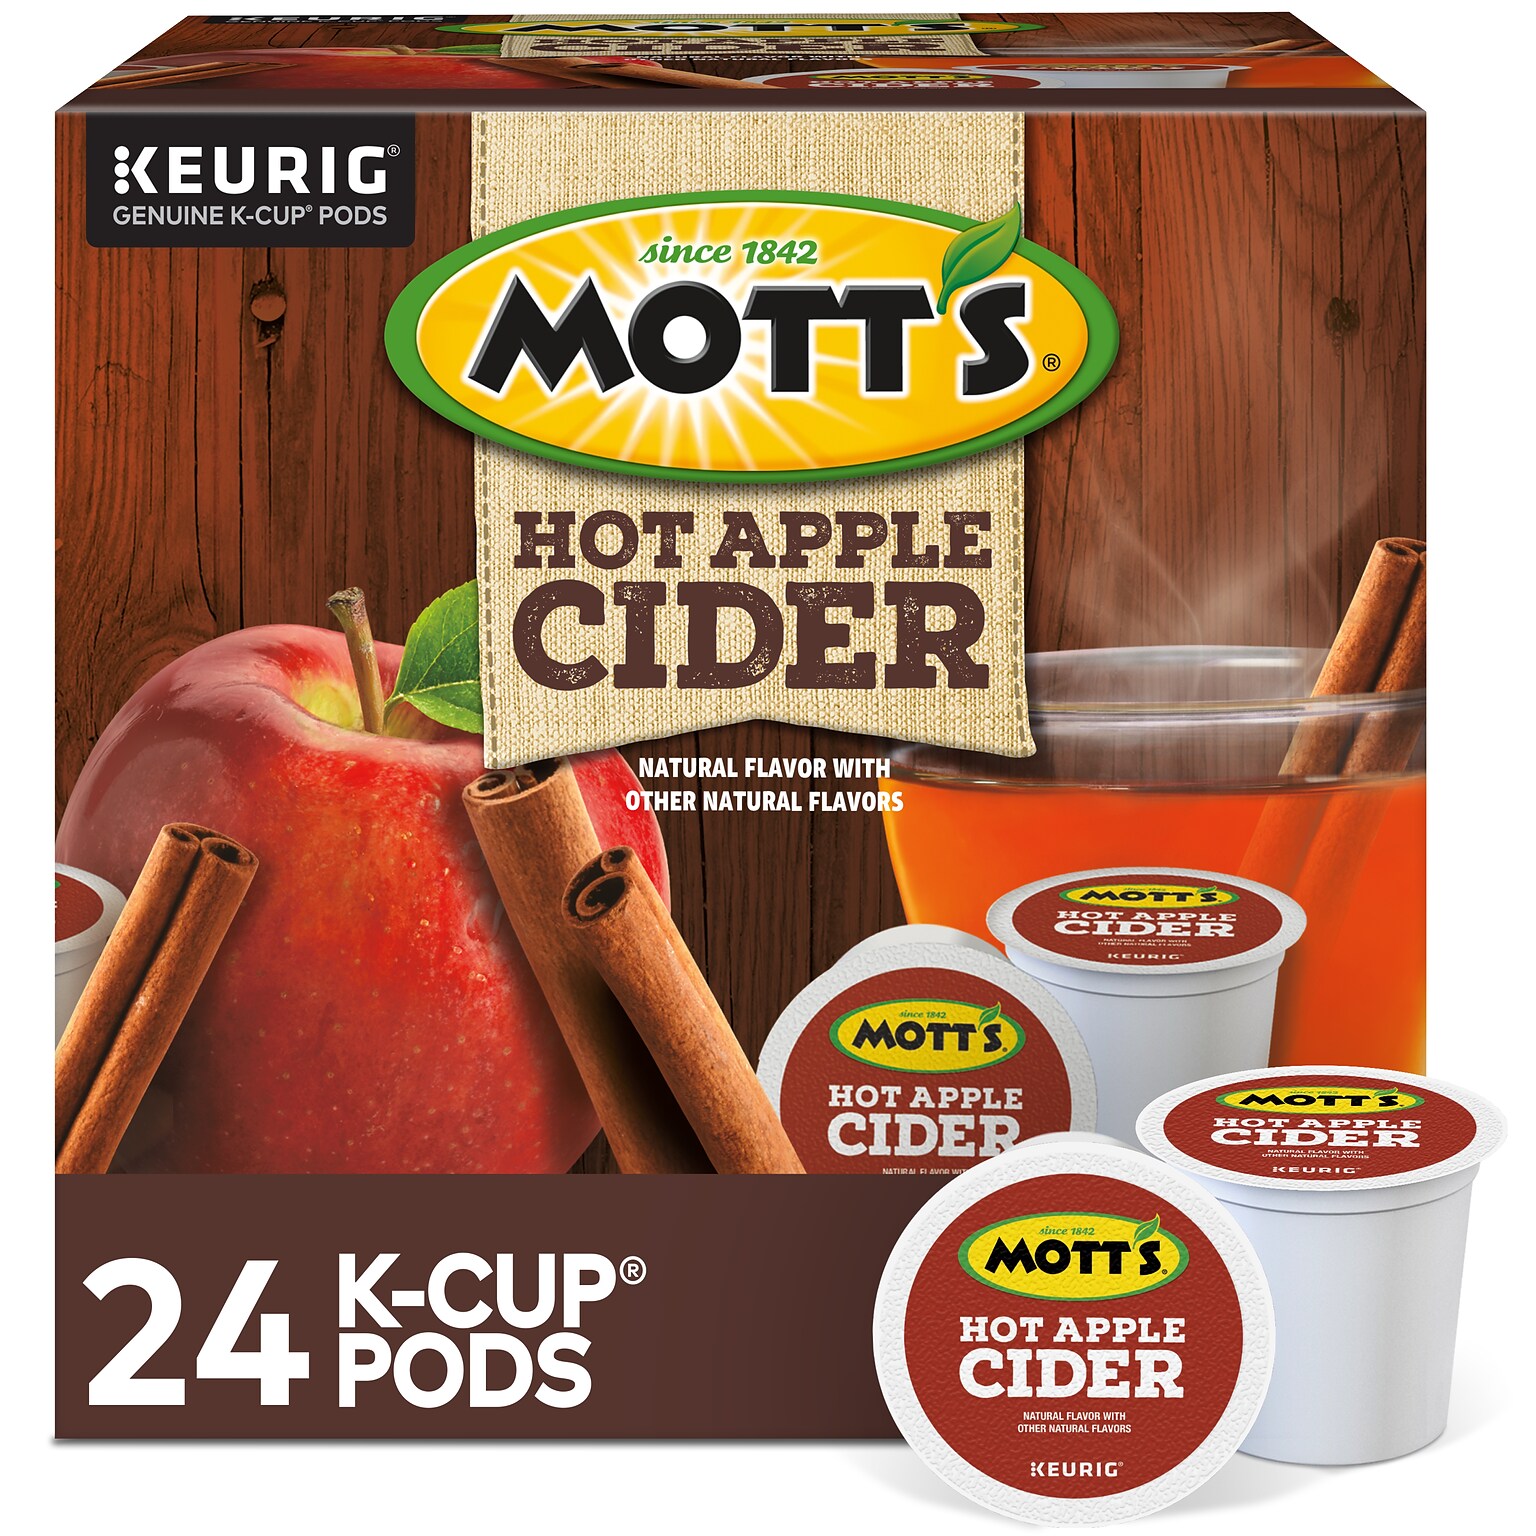 Motts Hot Apple Cider, 0.79 oz. Keurig K-Cup Pods, 24/Box (386040)